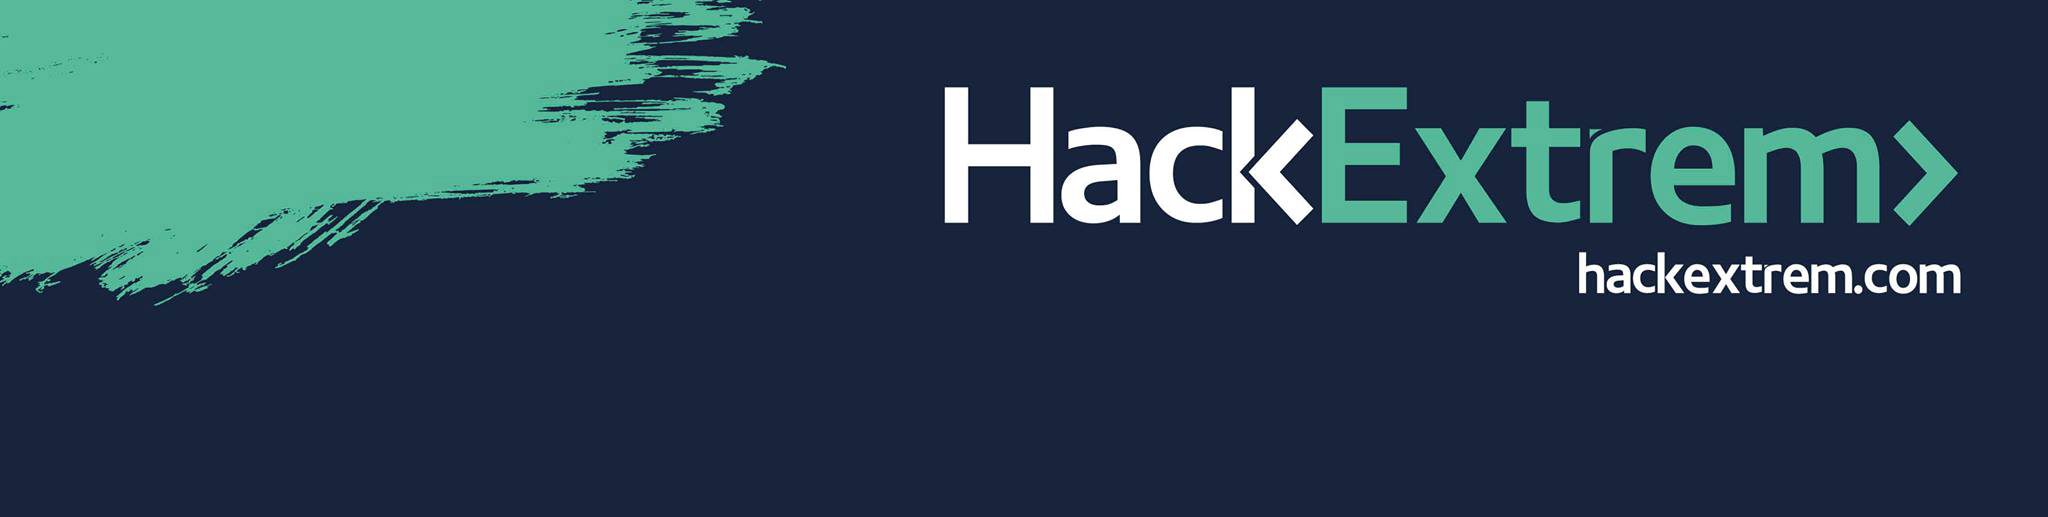 Fundación Extremeña de la Cultura patrocina HackExtrem, el movimiento ciudadano para “hackear” Extremadura y Portugal